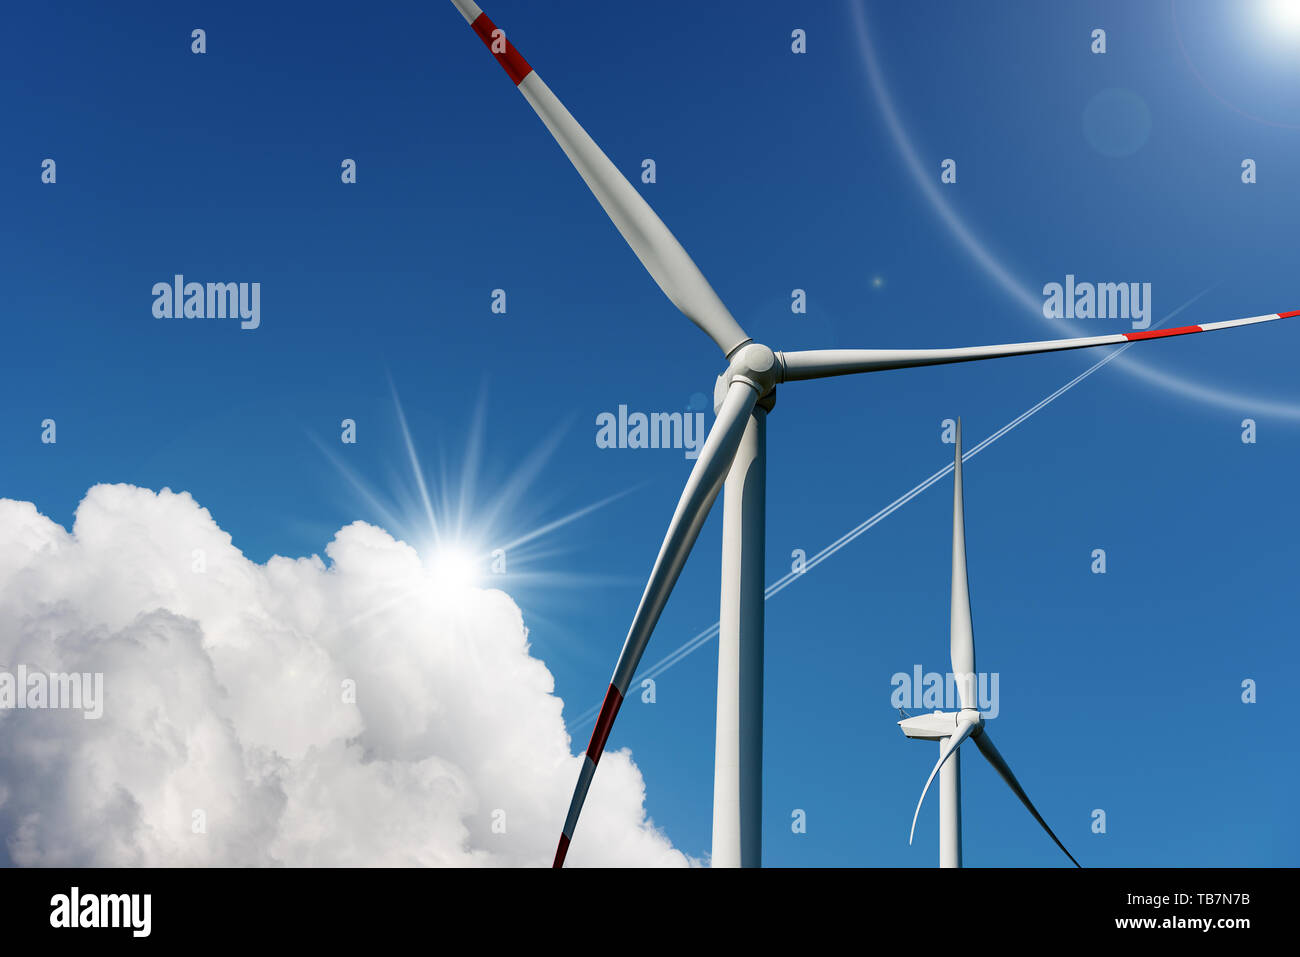 Zwei Windenergieanlagen auf einen blauen Himmel mit Wolken und Sonnenstrahlen - Erneuerbare Energie Konzept Stockfoto